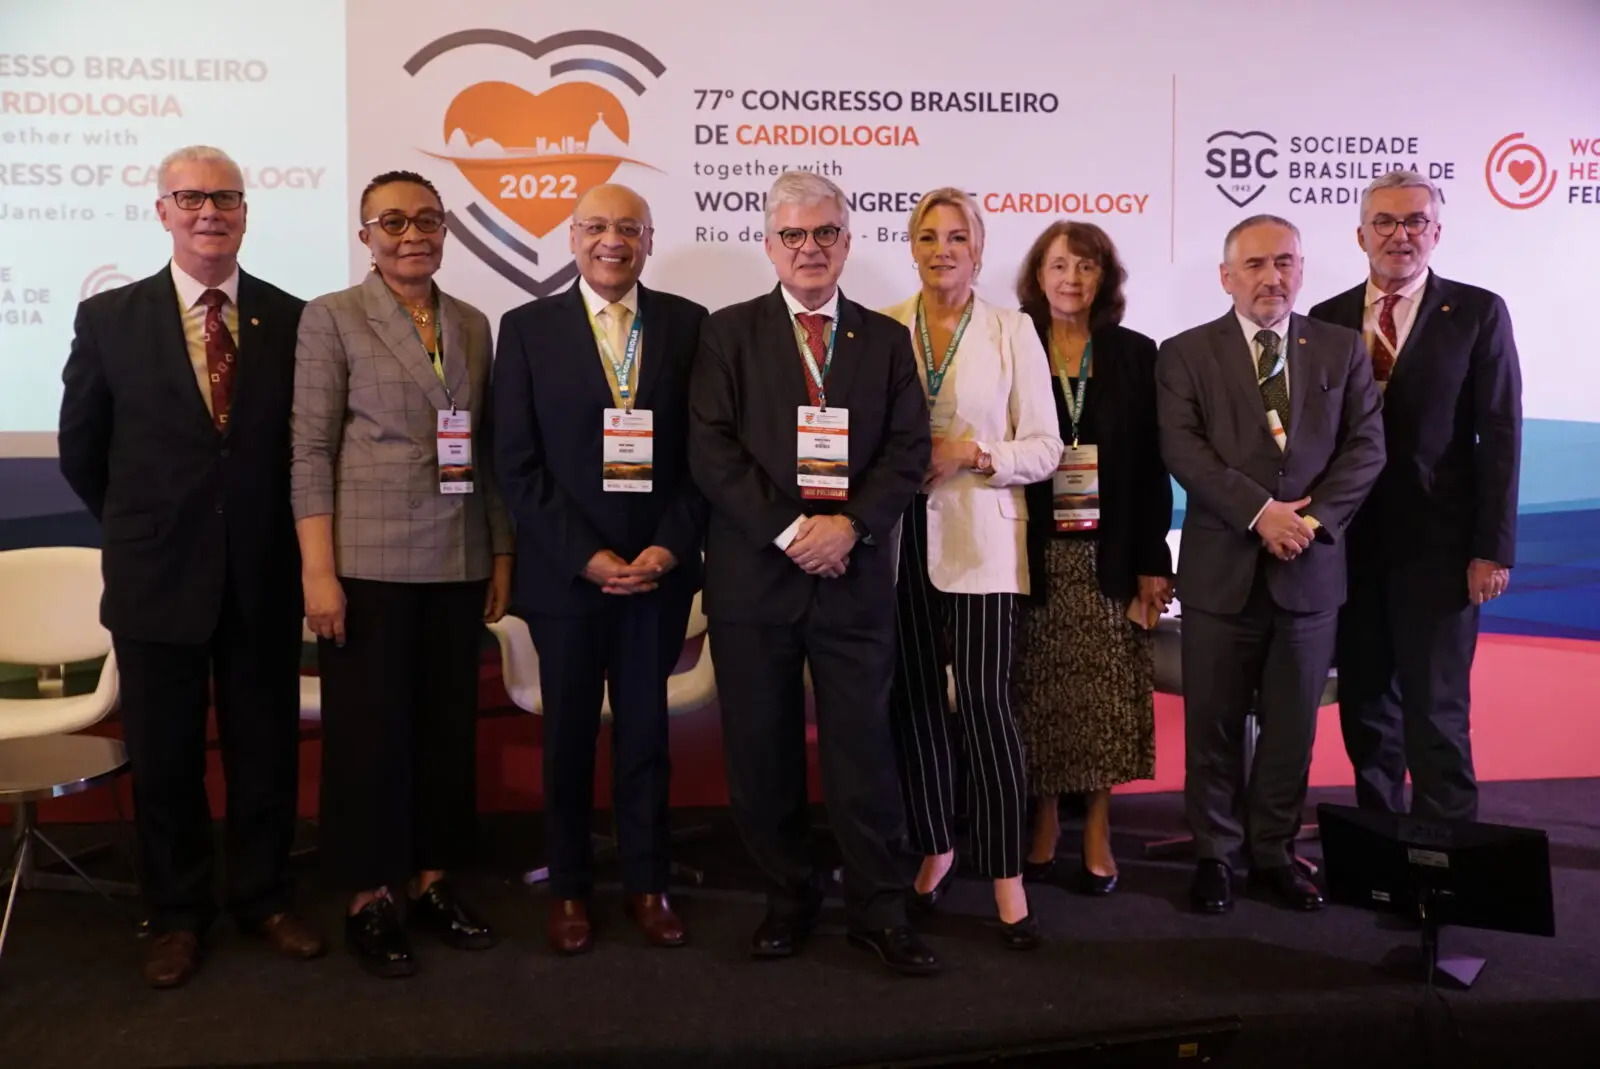 World Heart Federation executives at the 77th Congresso Brasileiro De Cardiologia